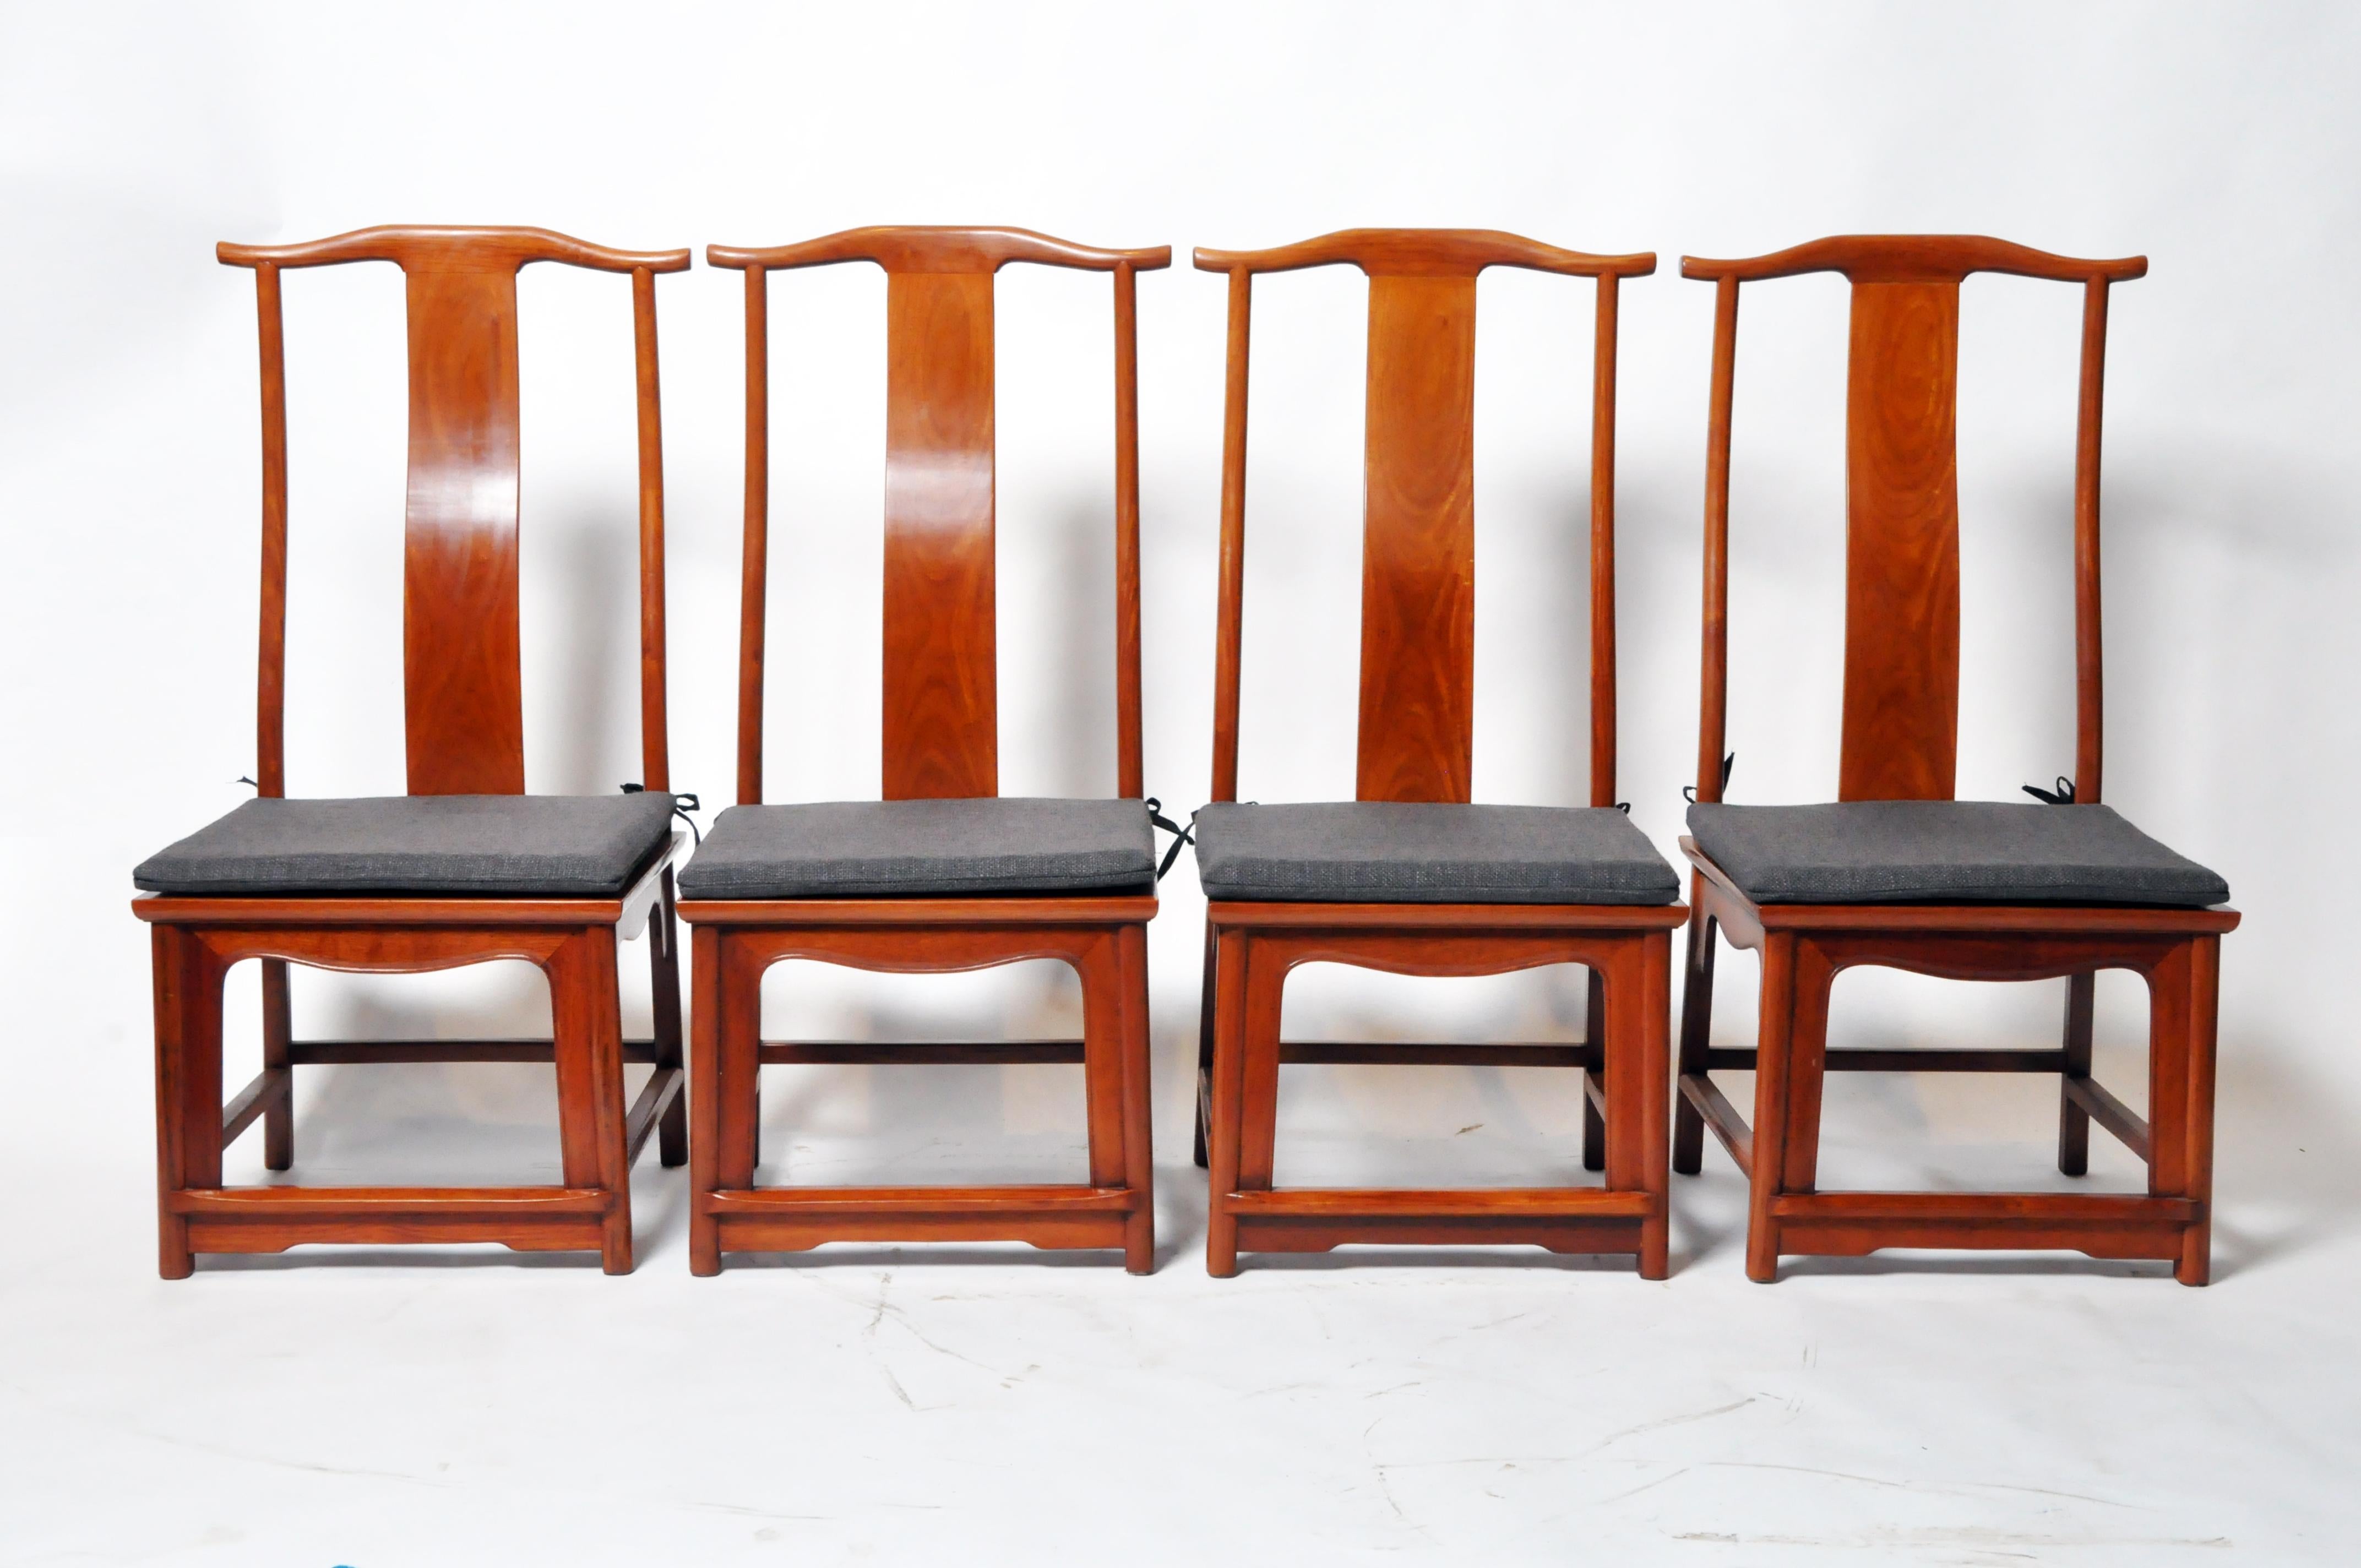 Diese zeitgenössischen chinesischen Stühle sind aus Hartholz gefertigt und verfügen über elegante, traditionell geschwungene Rückenlehnen für maximalen Komfort. Die Stühle sind mit einem modernen Klarlack lackiert. Sie sind etwas niedriger als